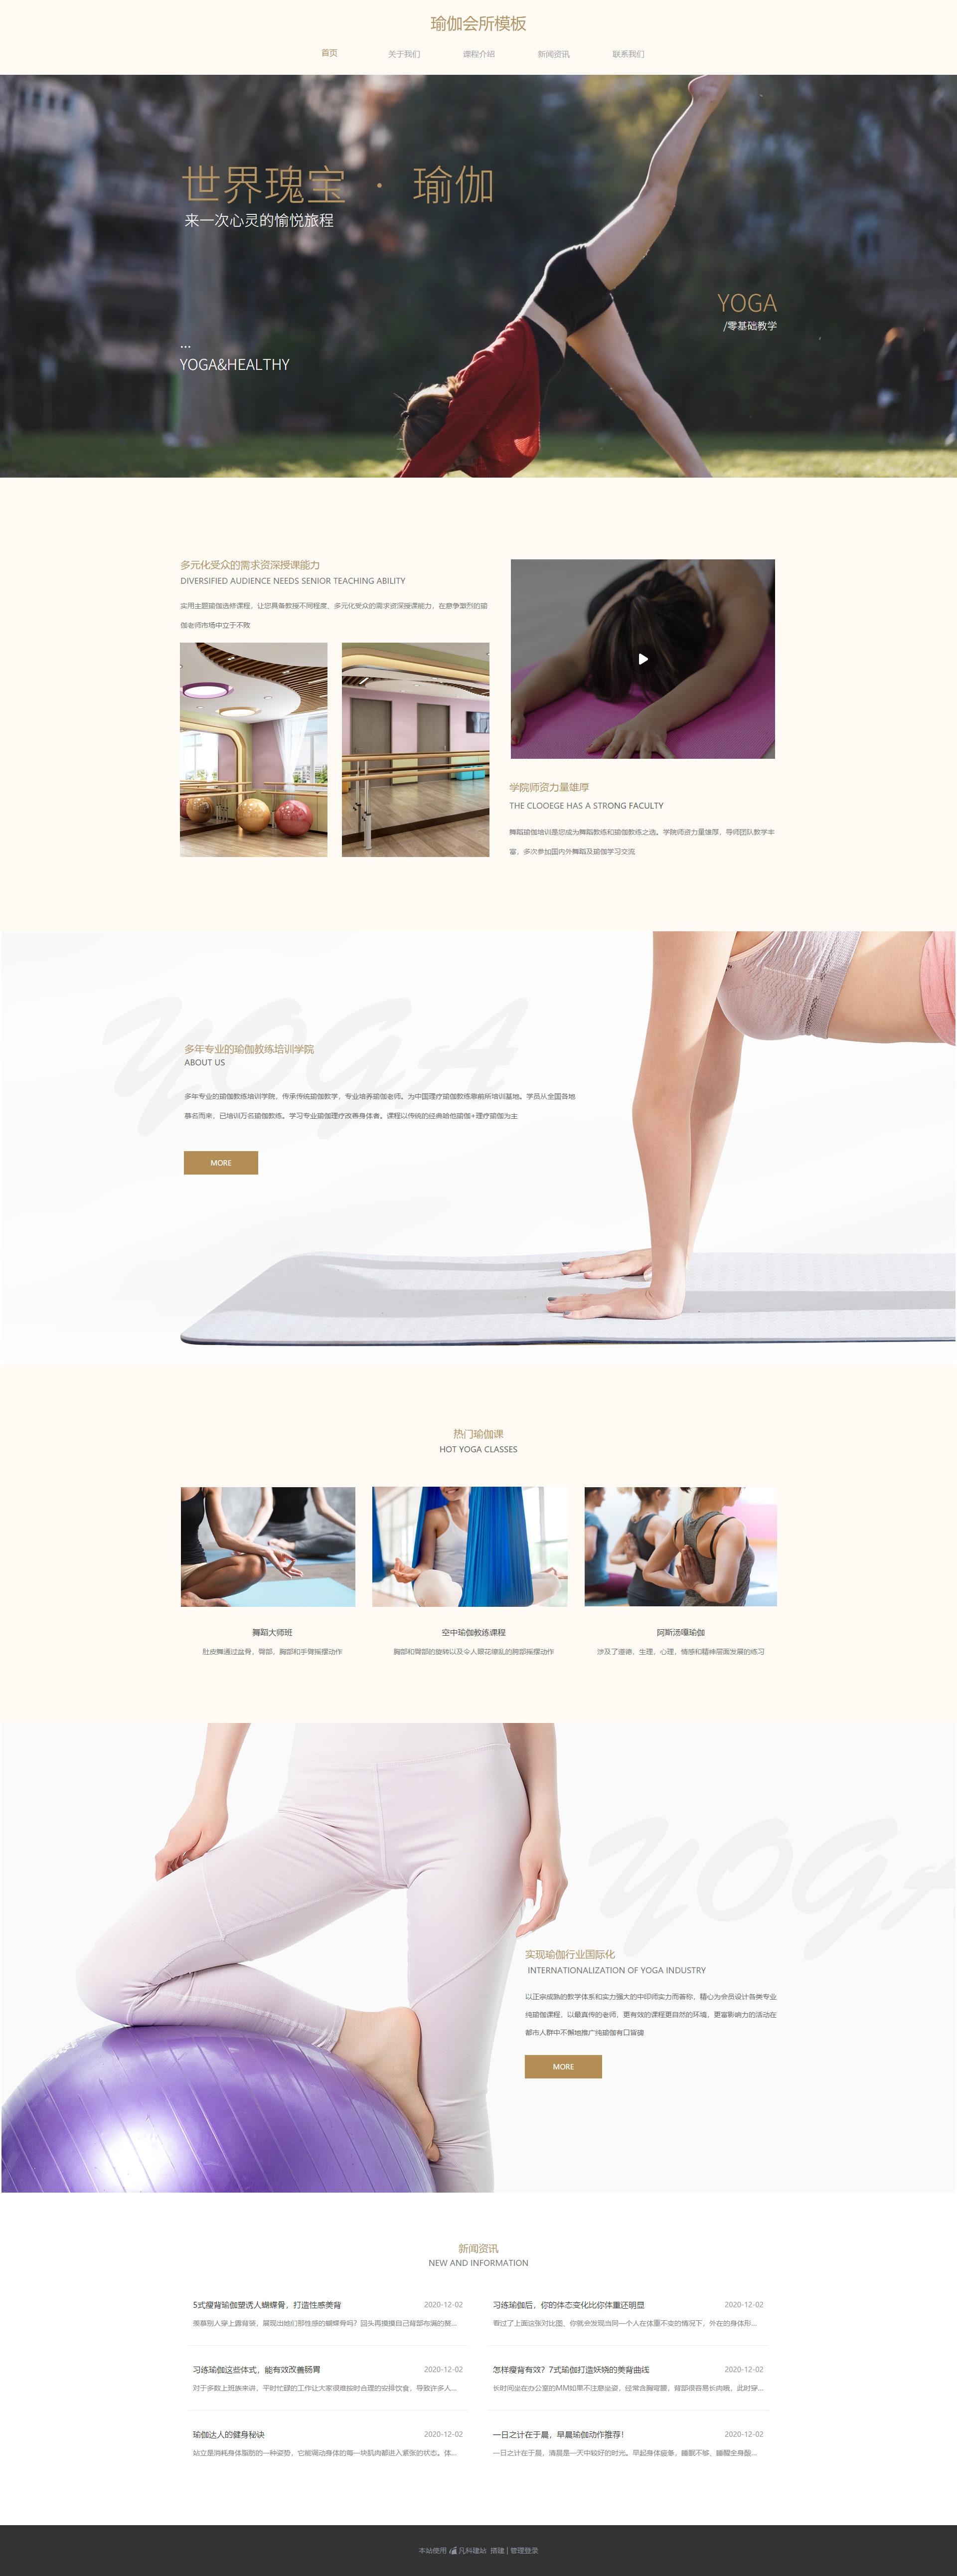 个性瑜伽健身俱乐部网站模板